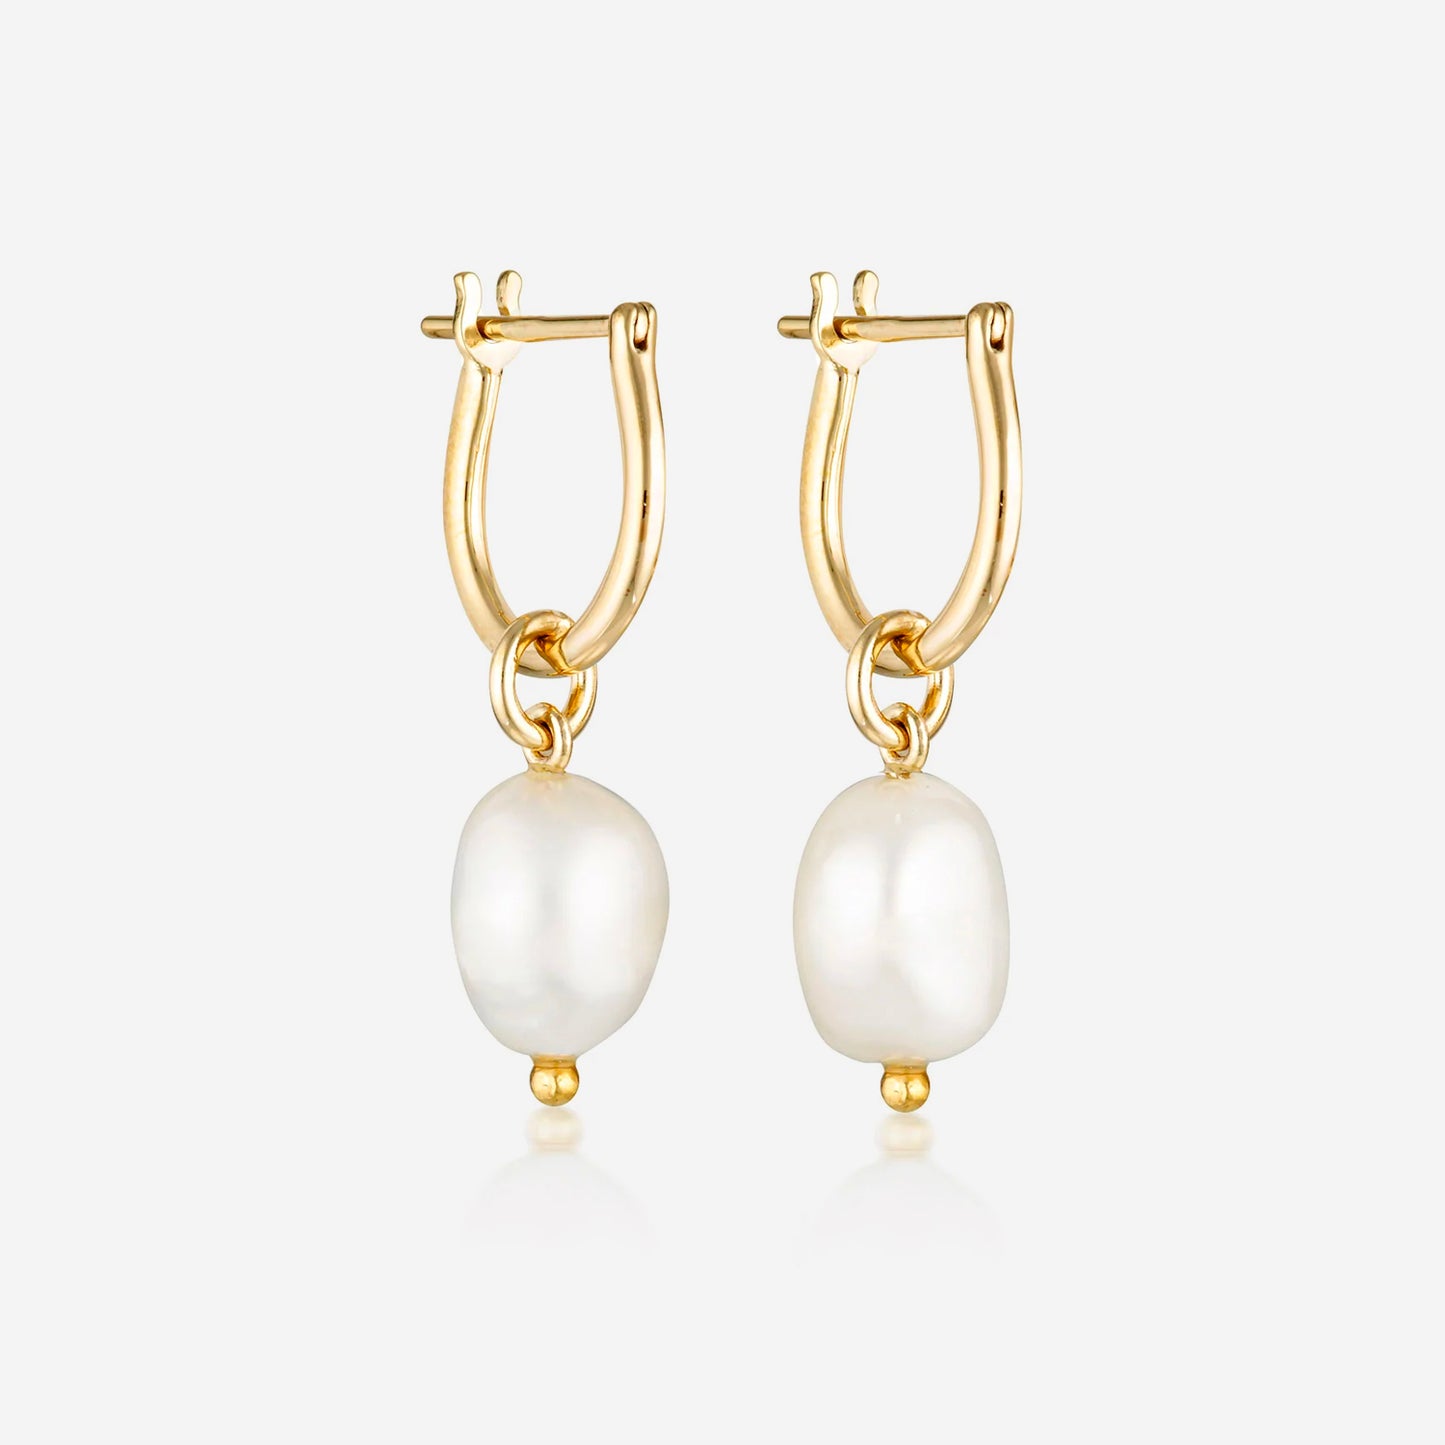 Linda Tahija - Baroque Pearl Basic Hoop Earrings - Gold Plated